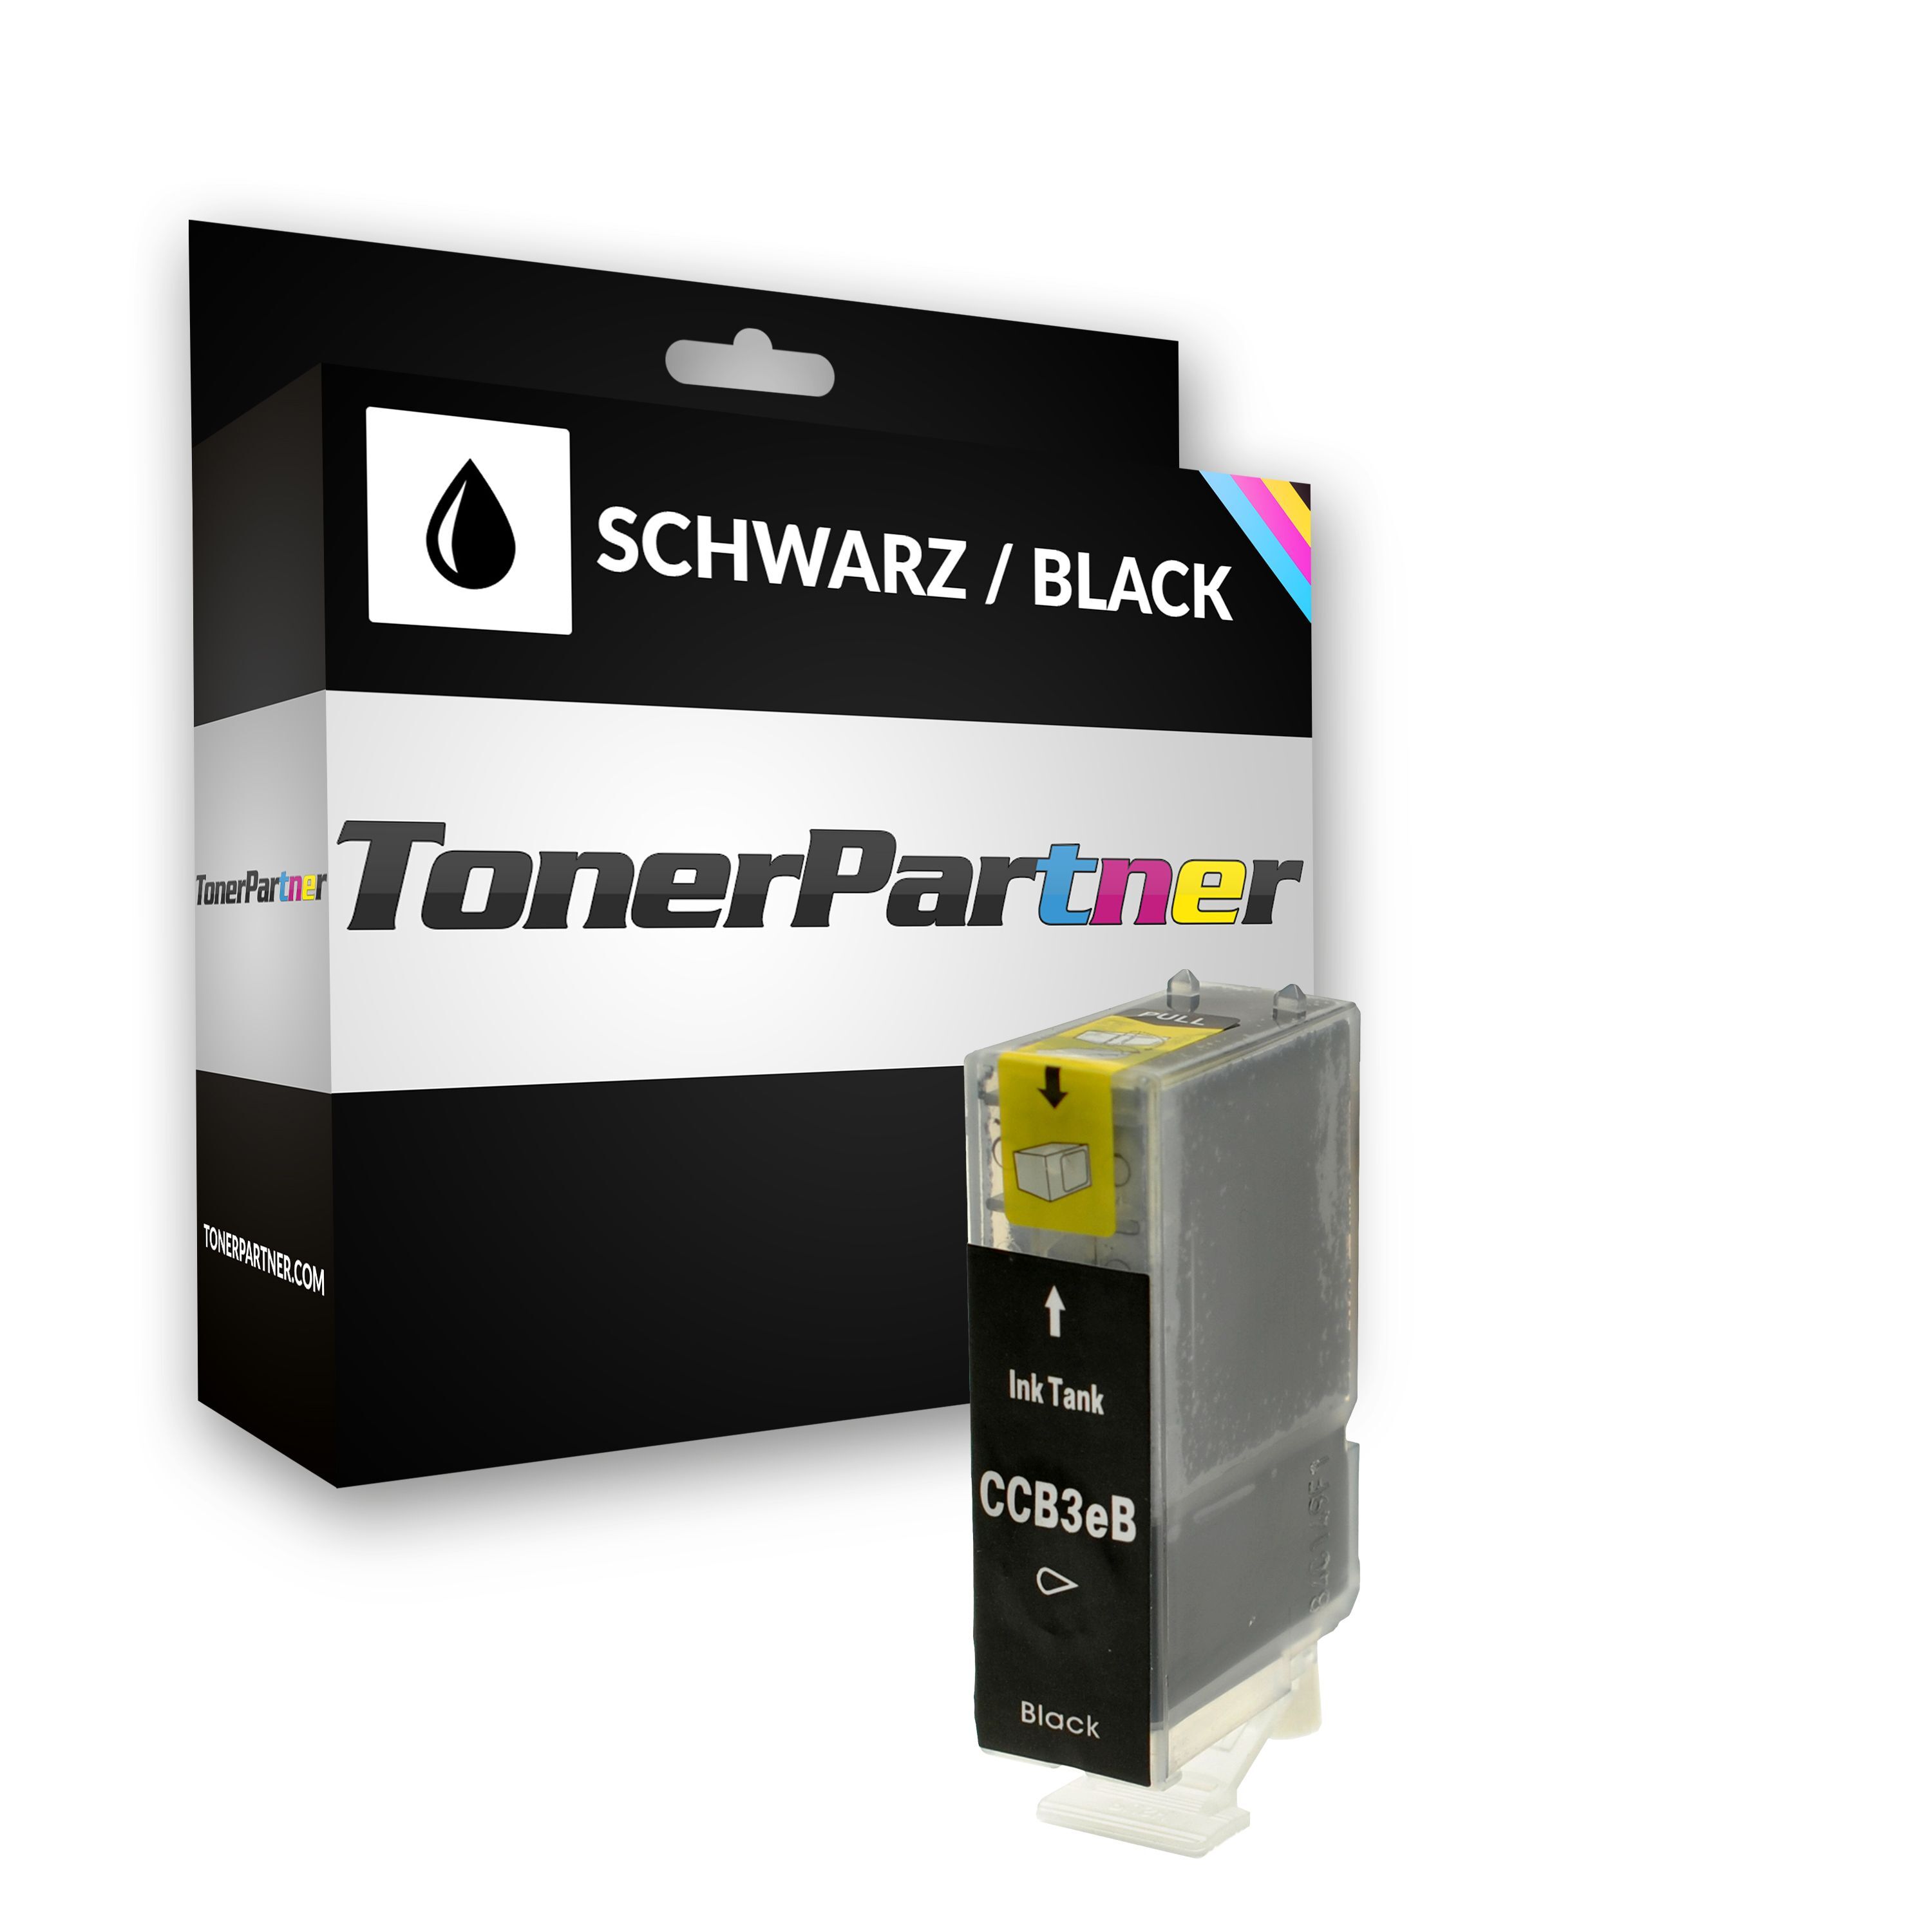 TonerPartner Kompatibel zu Canon Multipass MP 700 Tintenpatrone (BCI-3 EBK / 4479 A 002) schwarz, 500 Seiten, 0,51 Rp pro Seite, Inhalt: 27 ml von TonerPartner